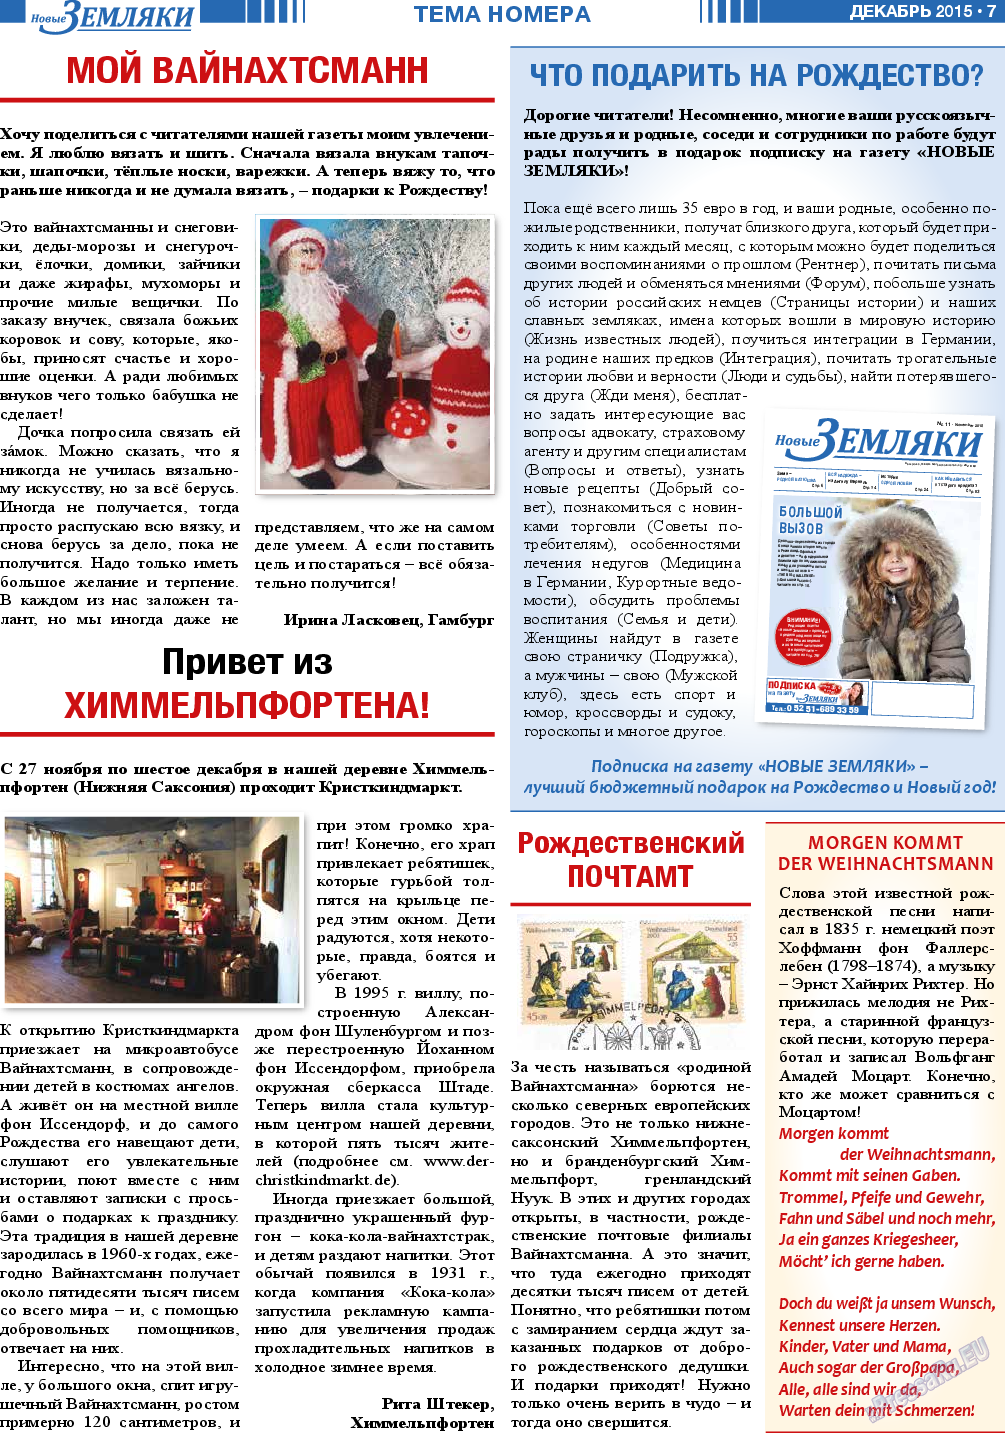 Новые Земляки, газета. 2015 №12 стр.7